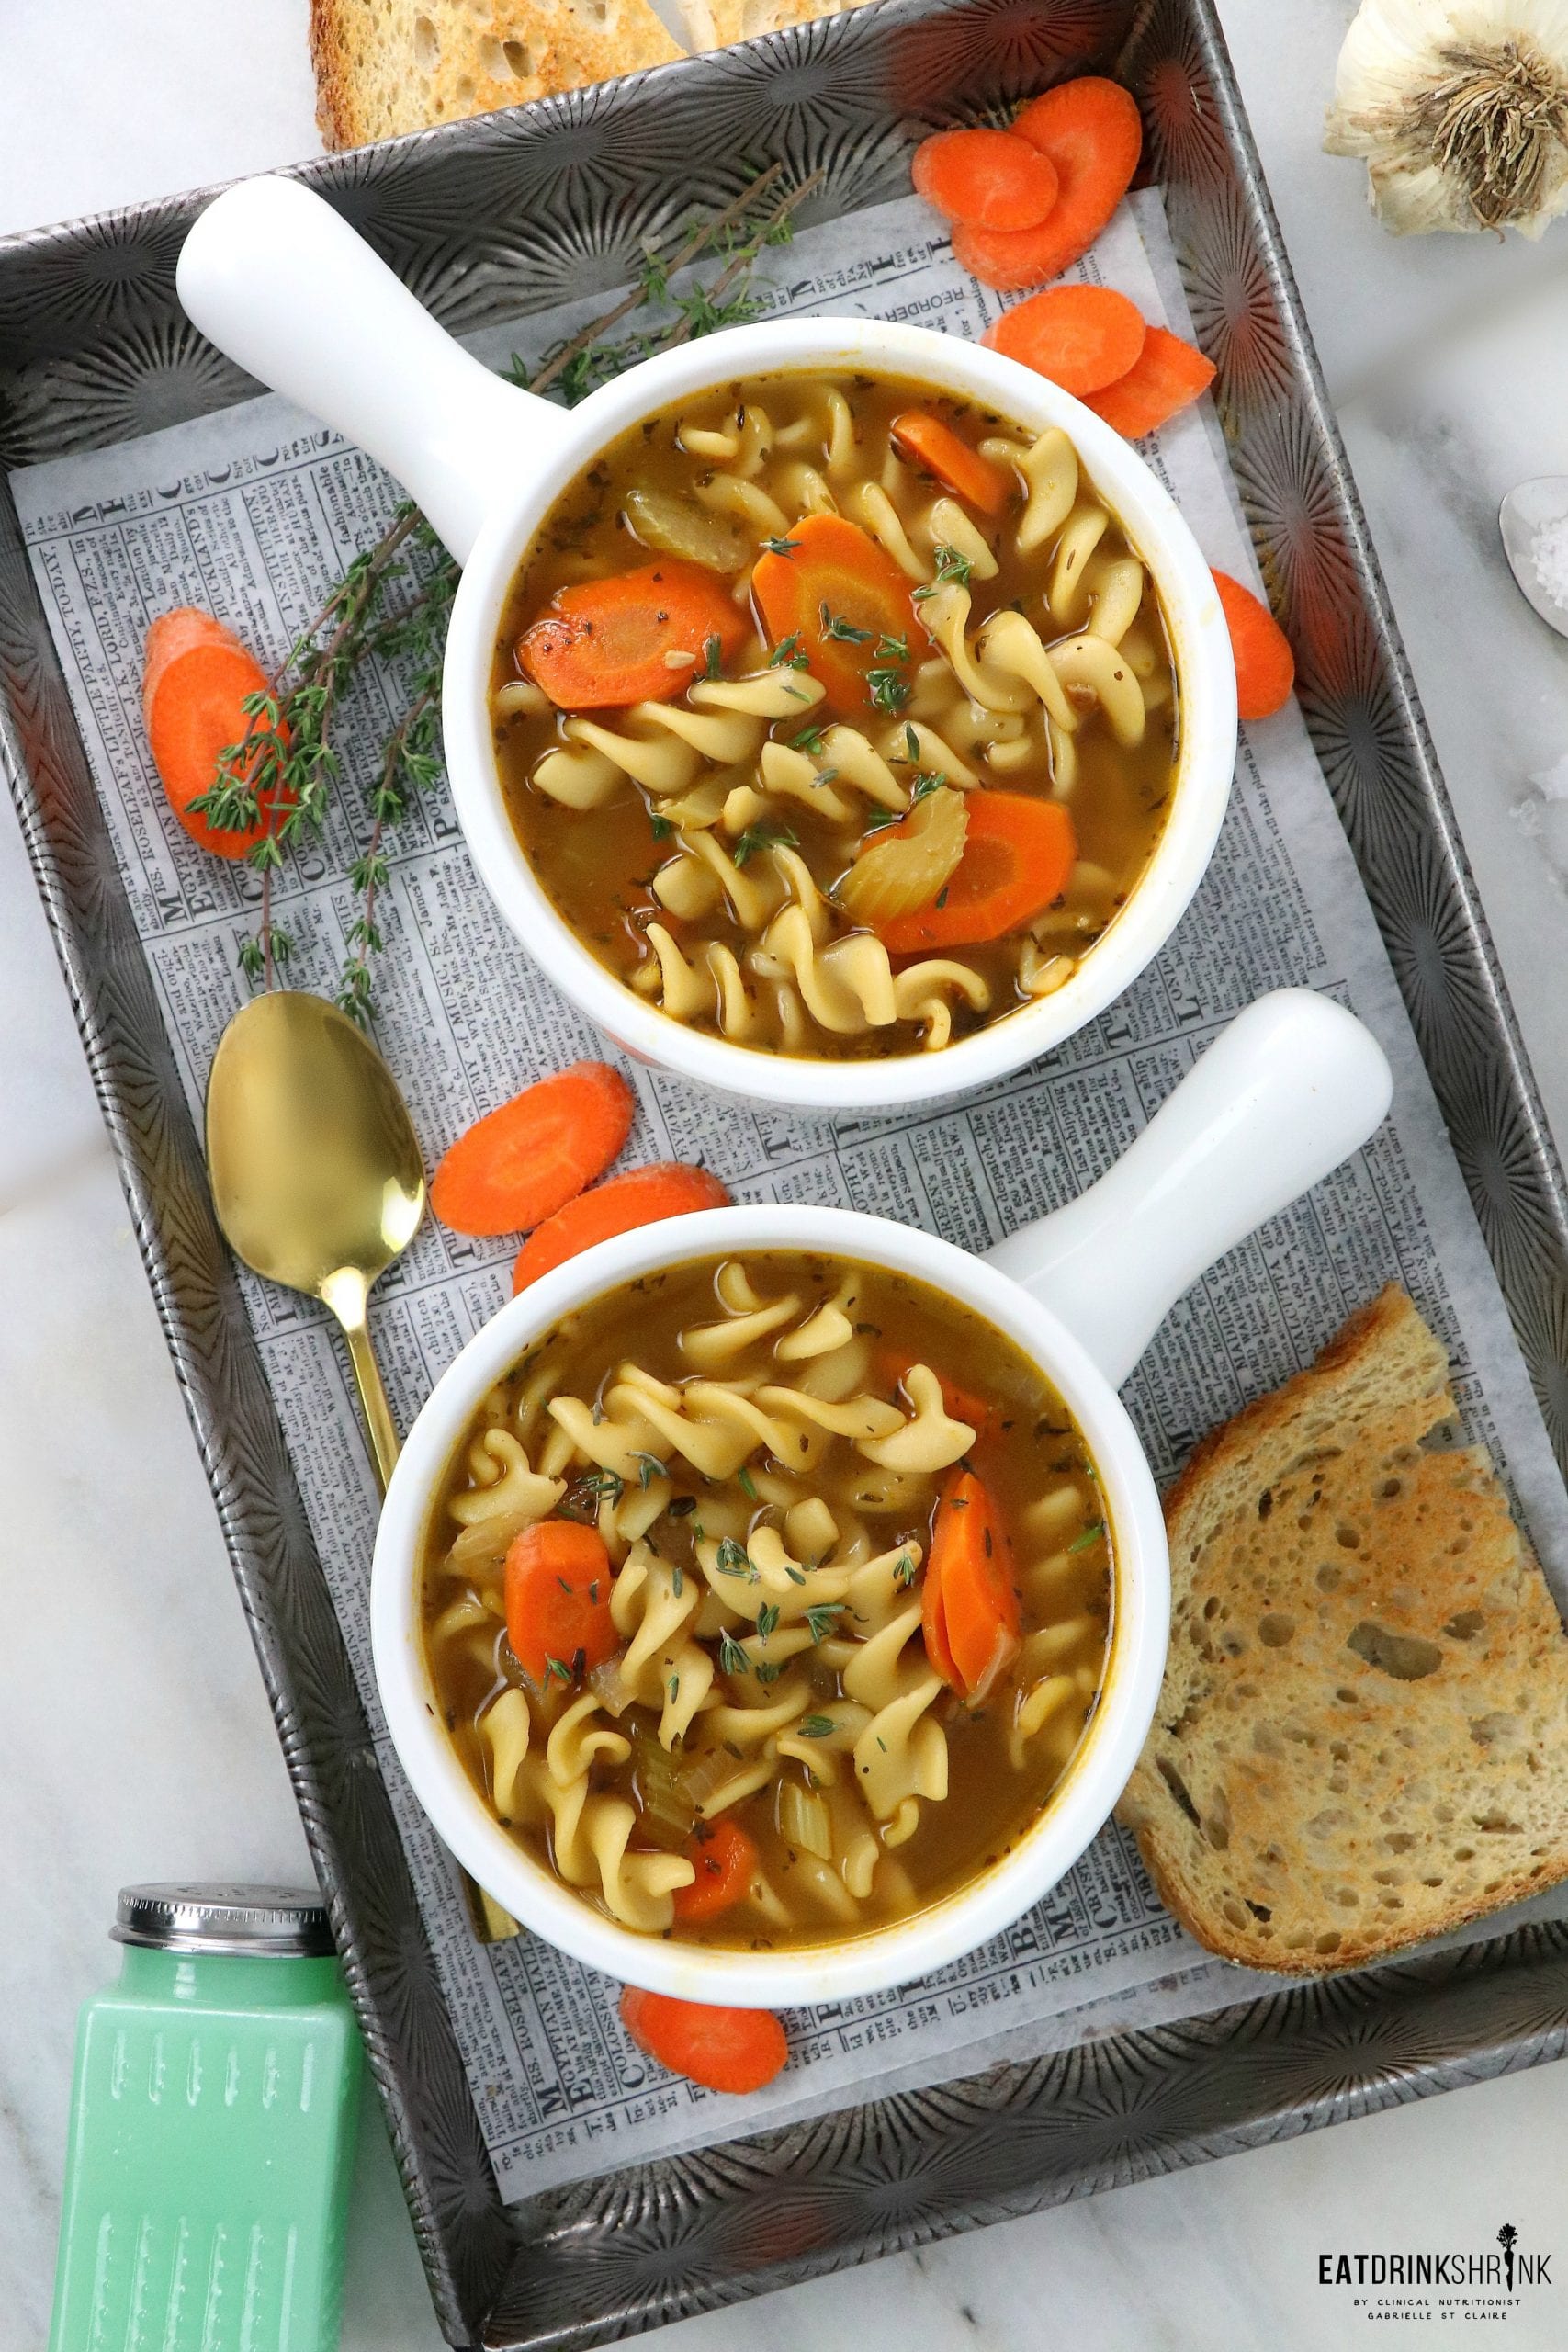 Vegan “Chicken” Noodle Soup